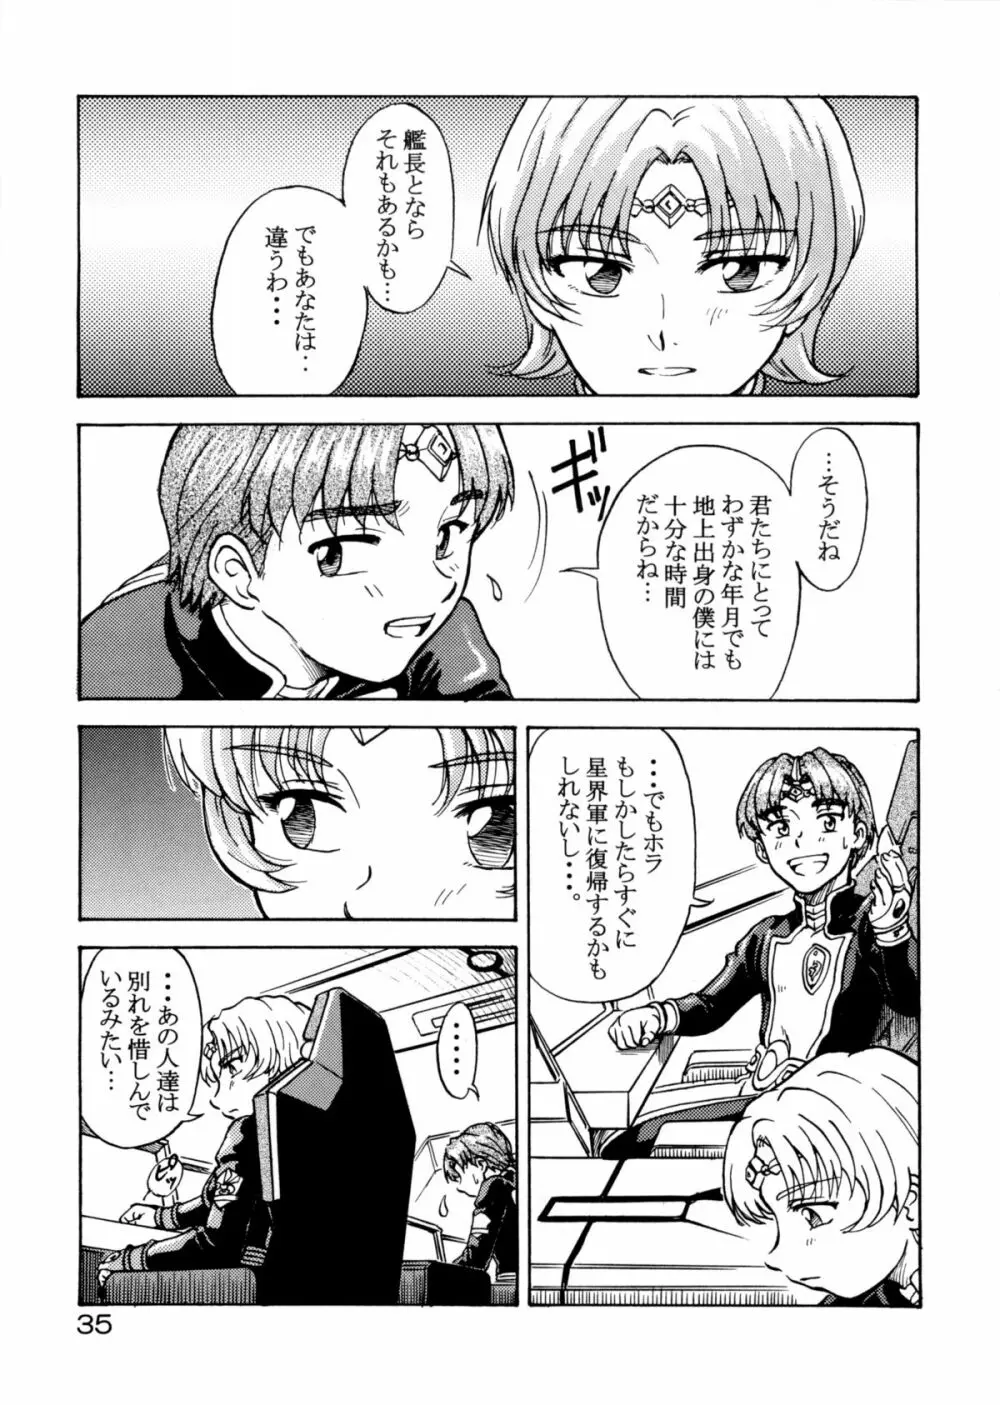 追放覚悟 Special Edition -Phase2- - page34